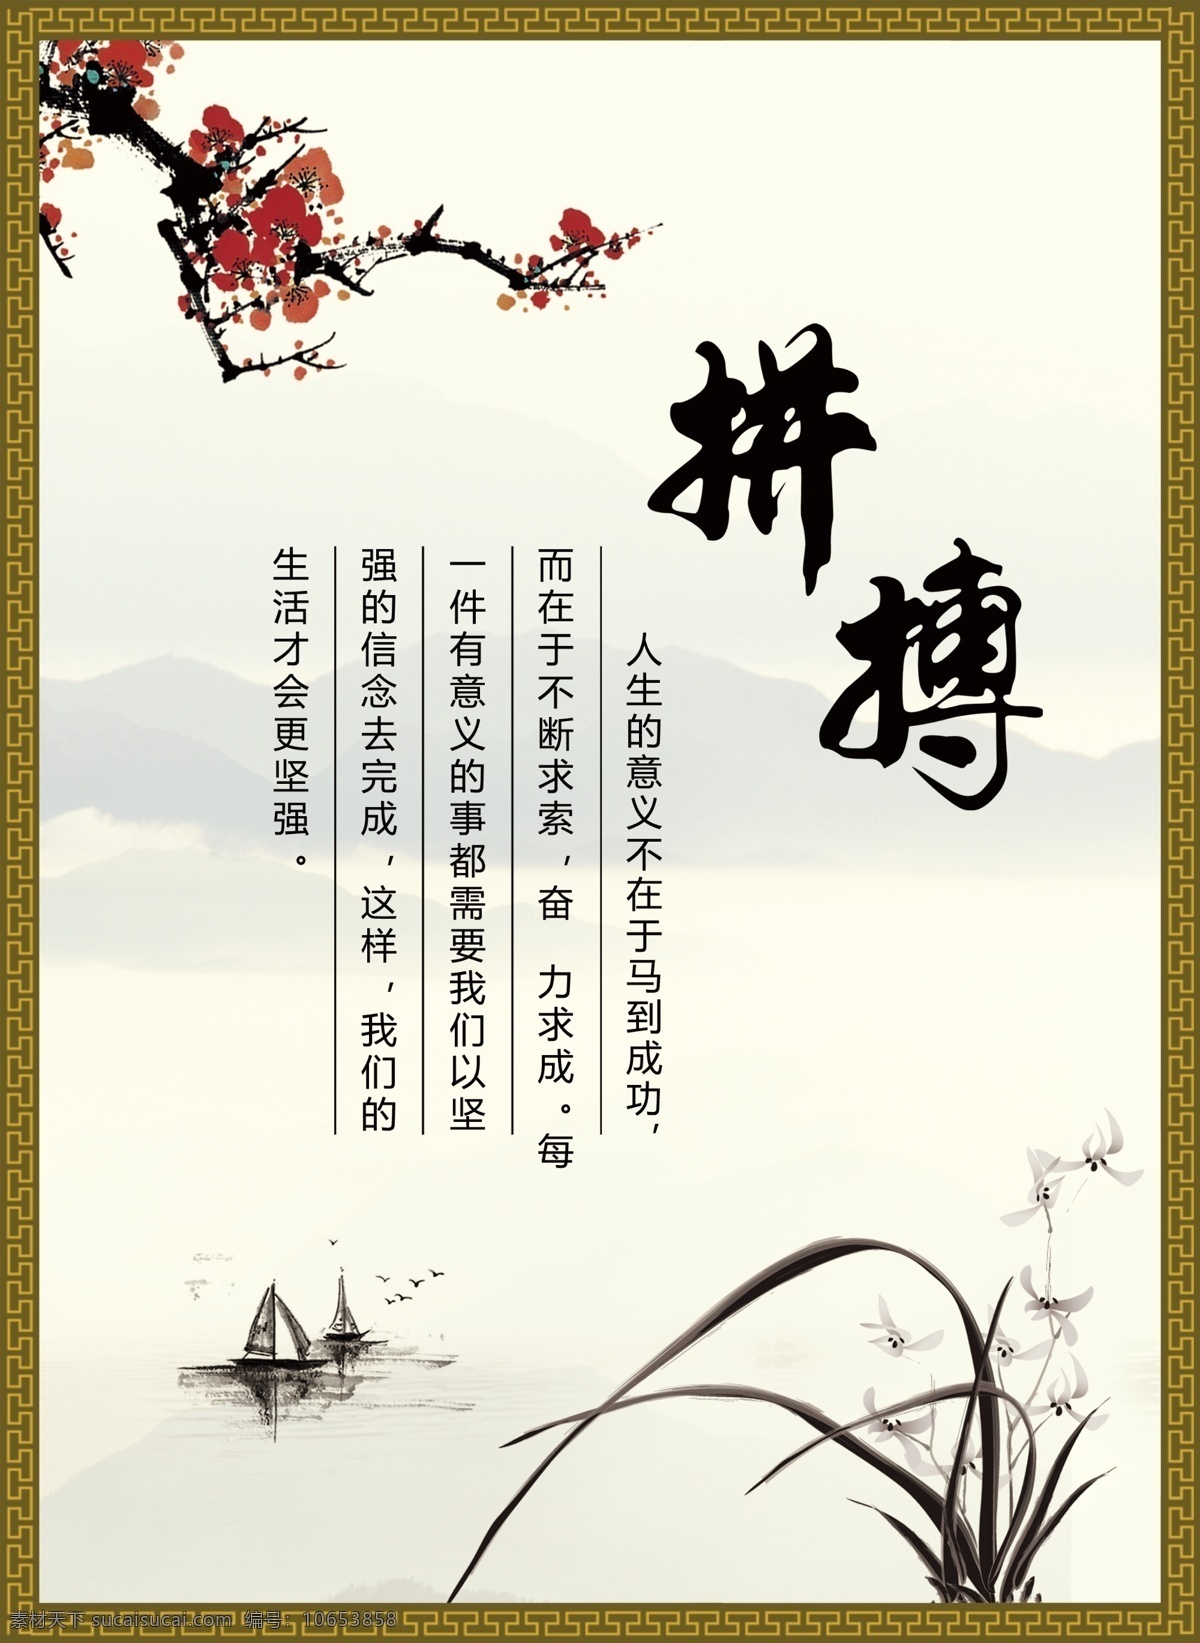 中国 风 校园文化 拼搏 展板 兰花 梅花 帆船 远山 办公室展板 展板模板 广告设计模板 源文件